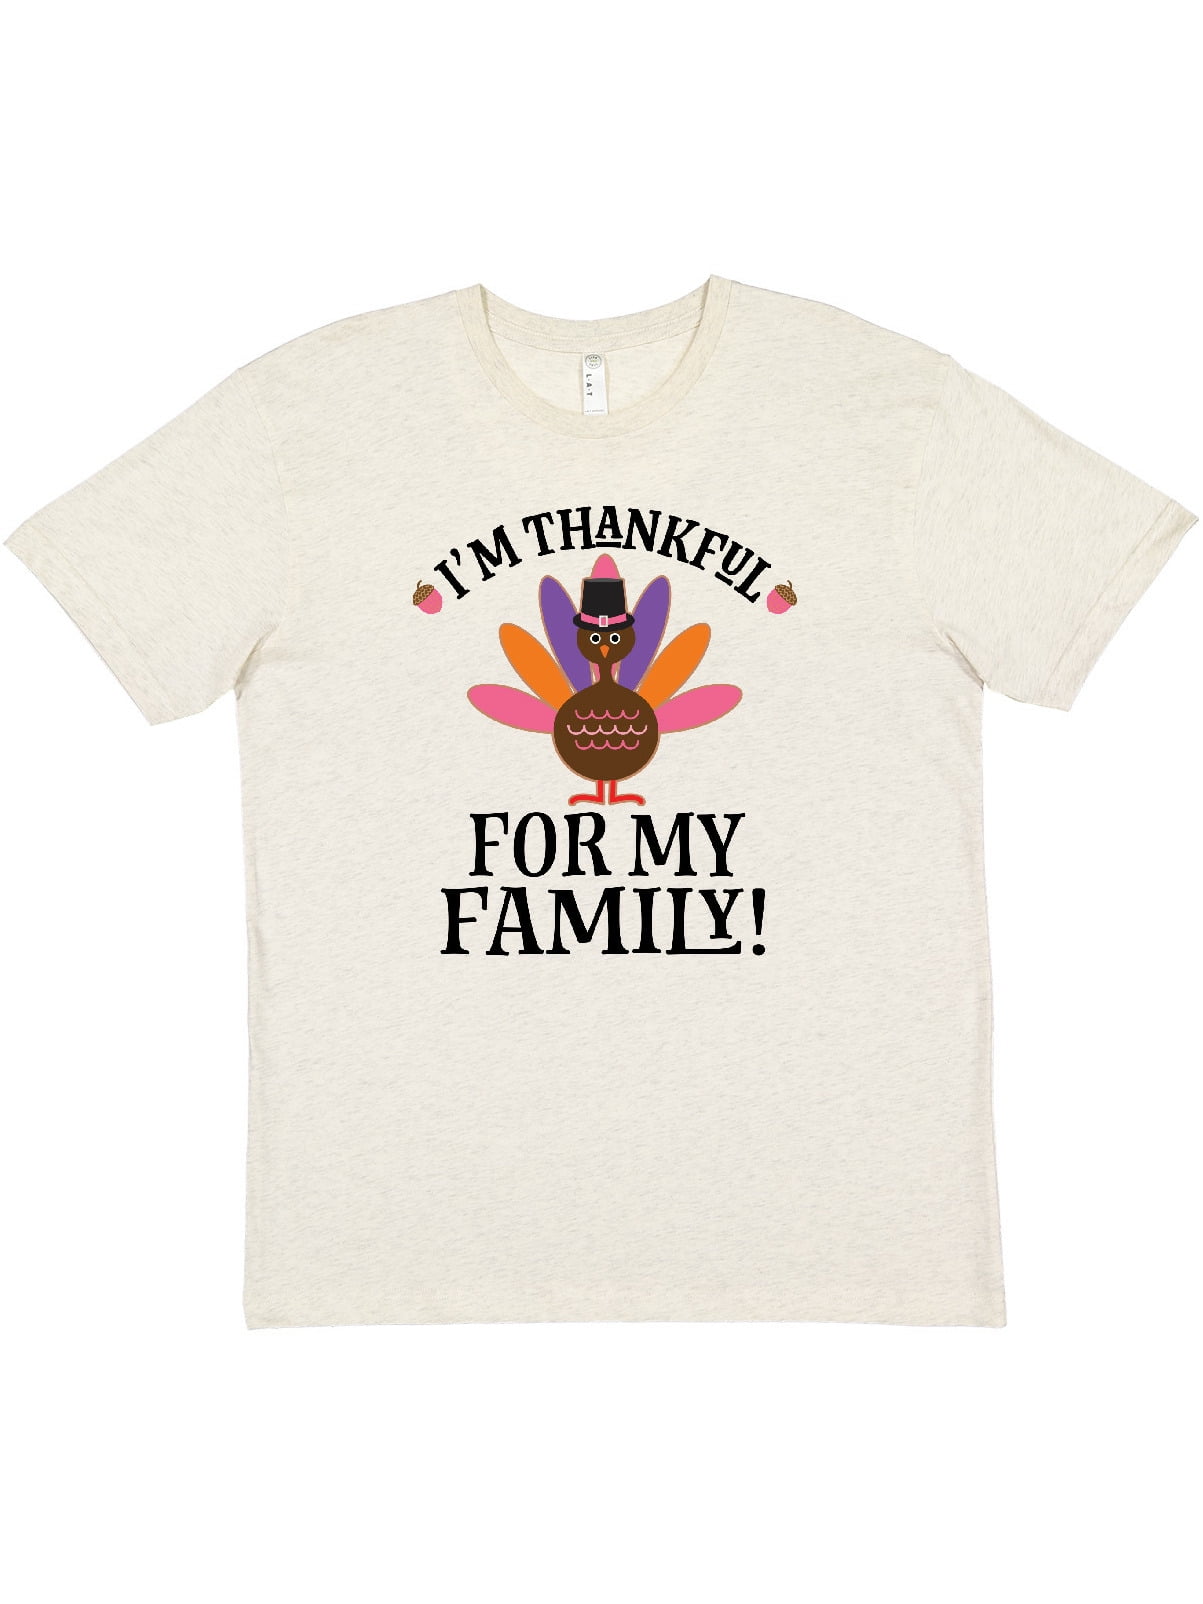 inktastic Auntie Little Turkey Thanksgiving Baby T-Shirt 